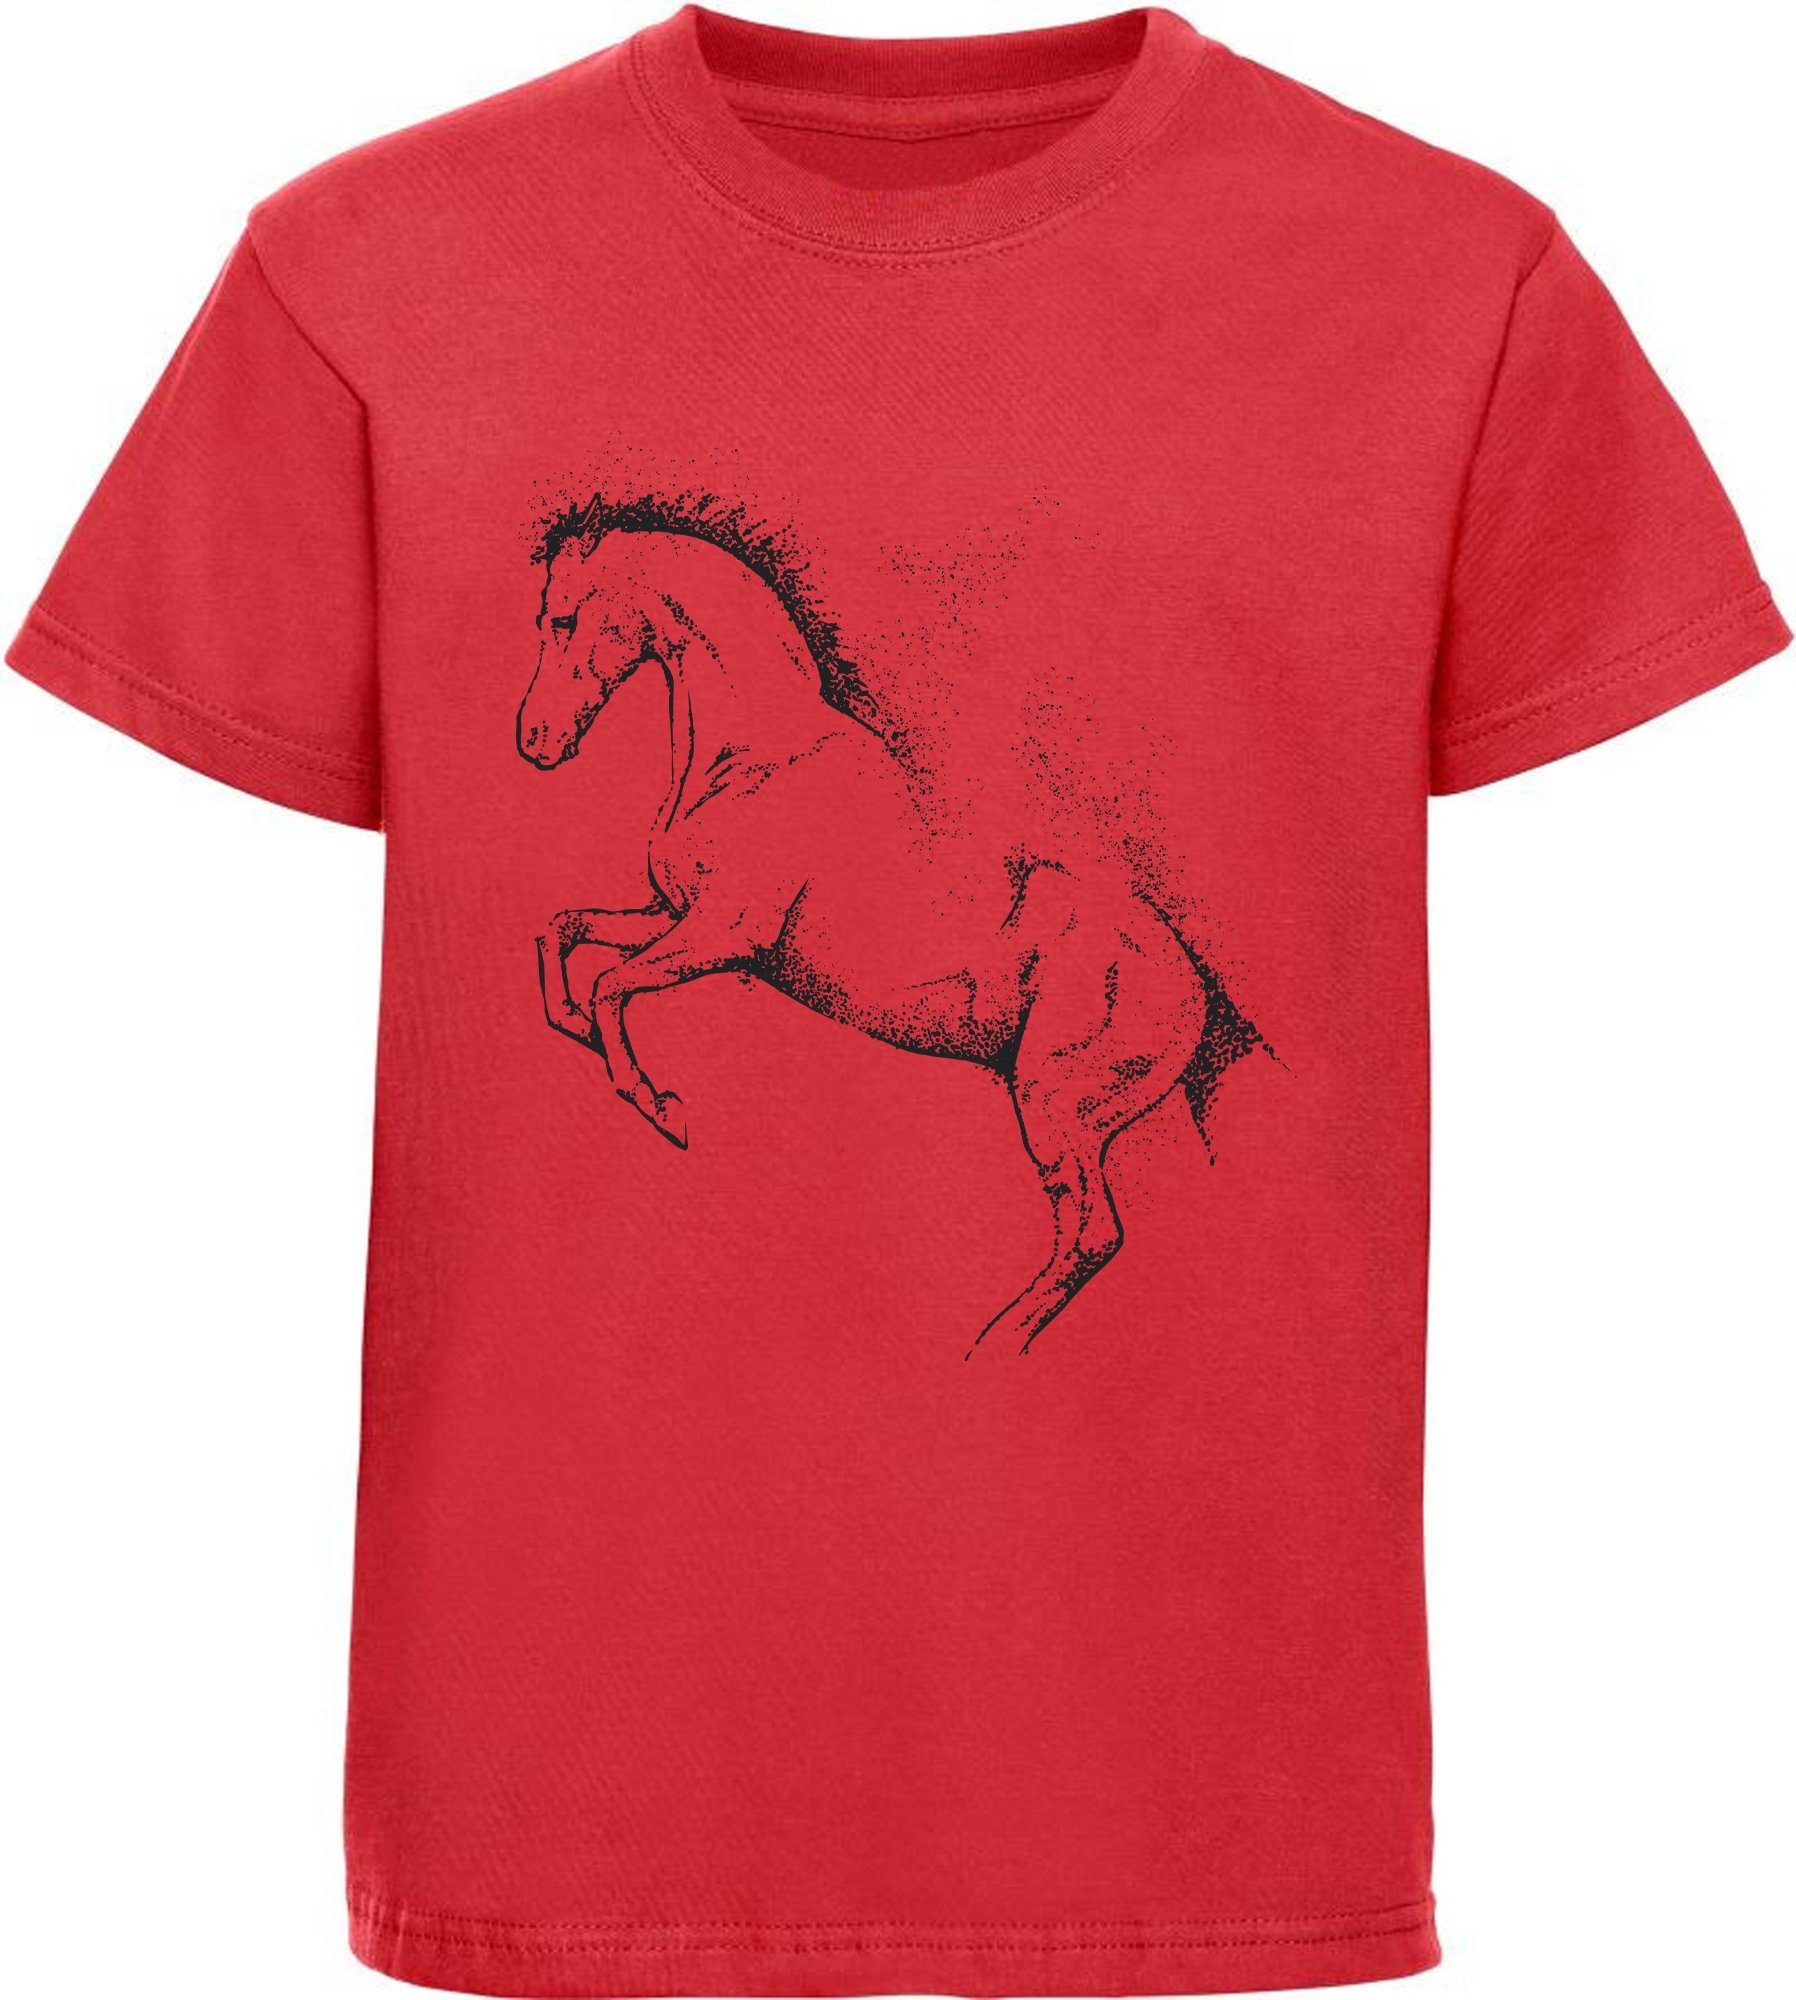 MyDesign24 Print-Shirt bedrucktes Kinder Mädchen T-Shirt - Gepunktete Pferde Silhouette Baumwollshirt mit Aufdruck, i196 rot